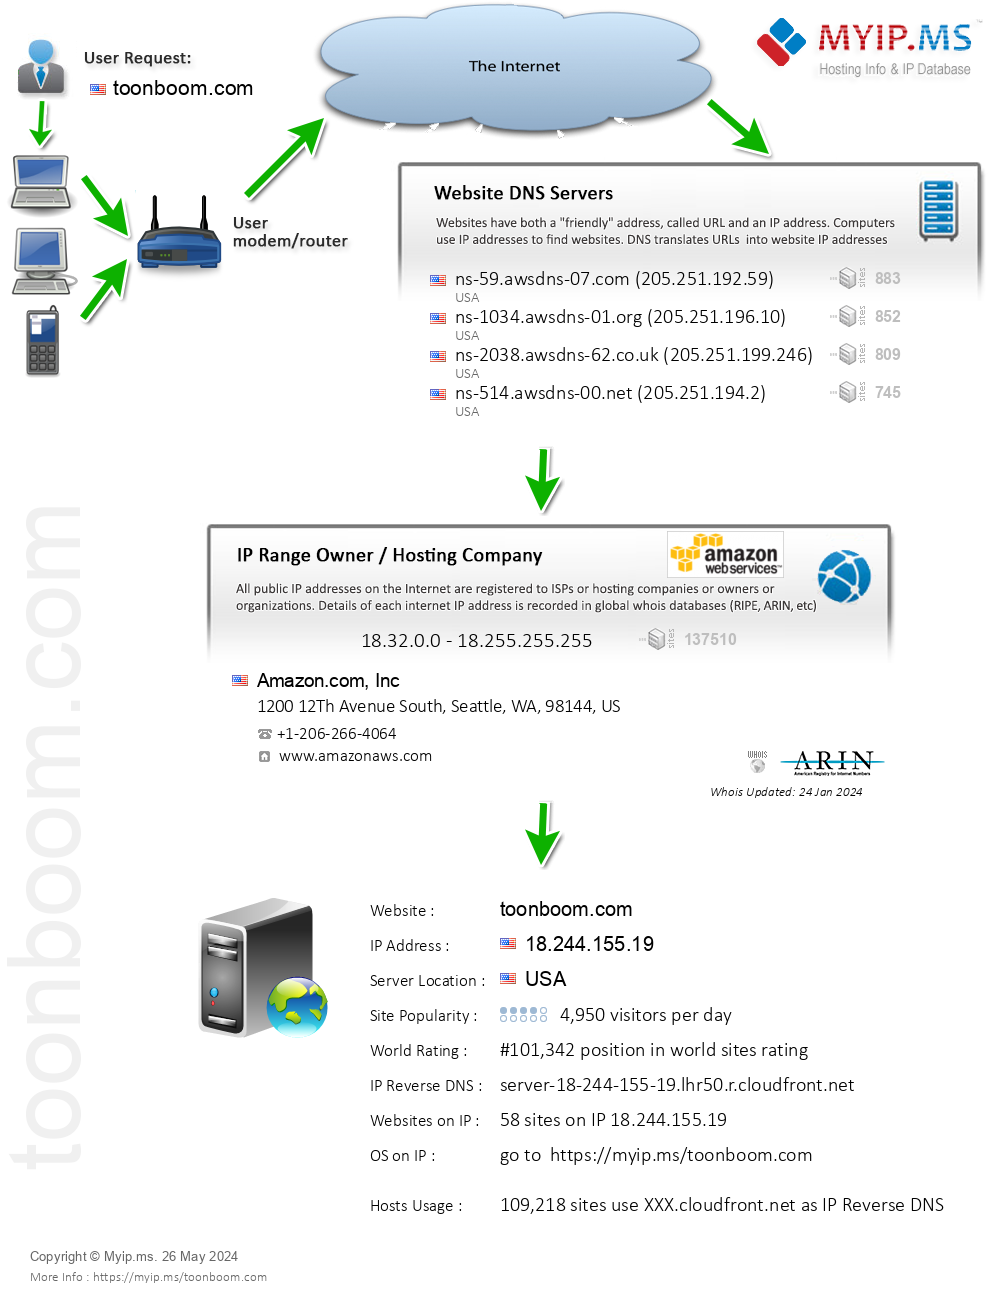 Toonboom.com - Website Hosting Visual IP Diagram